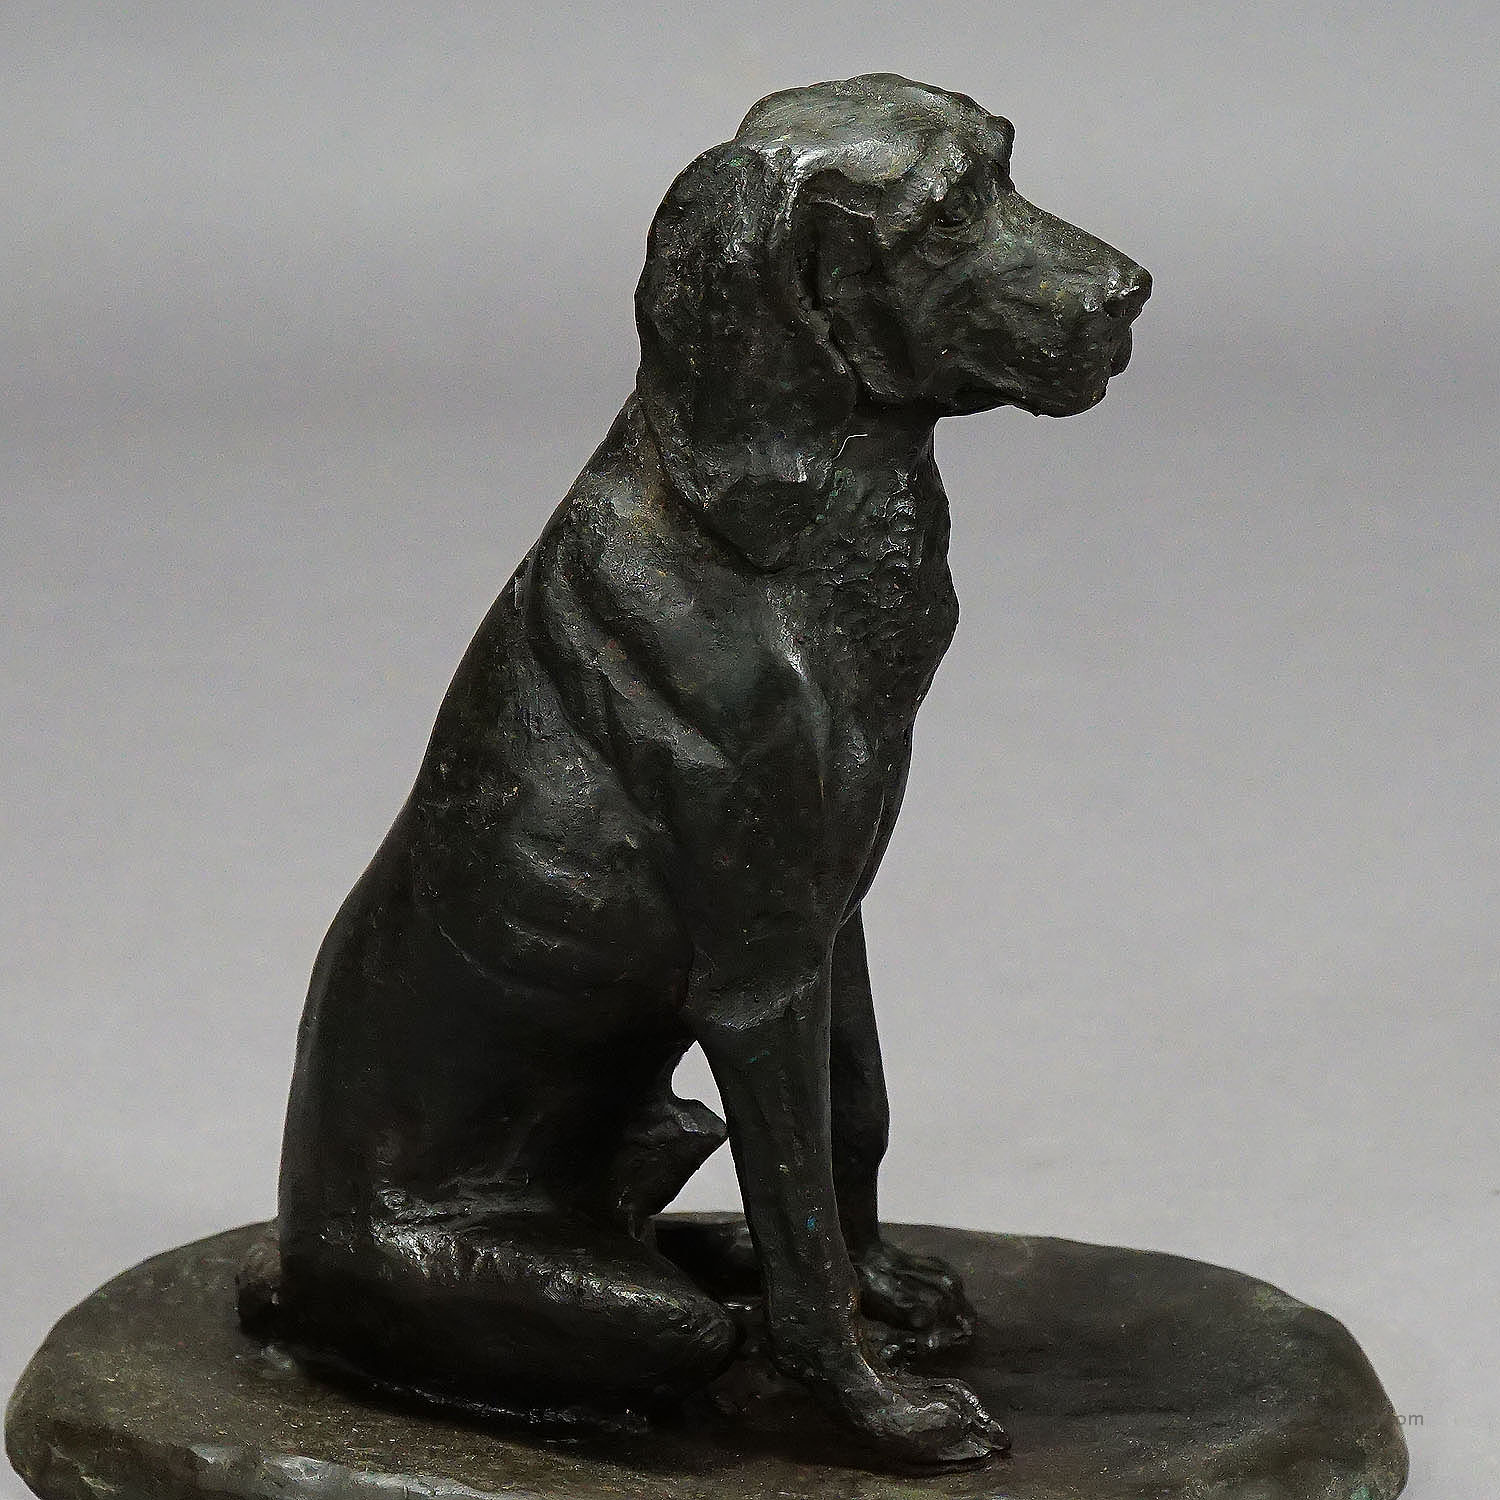 Antique Artistic Bronze Cast of a Retriver Dog, Germany ca. 1900